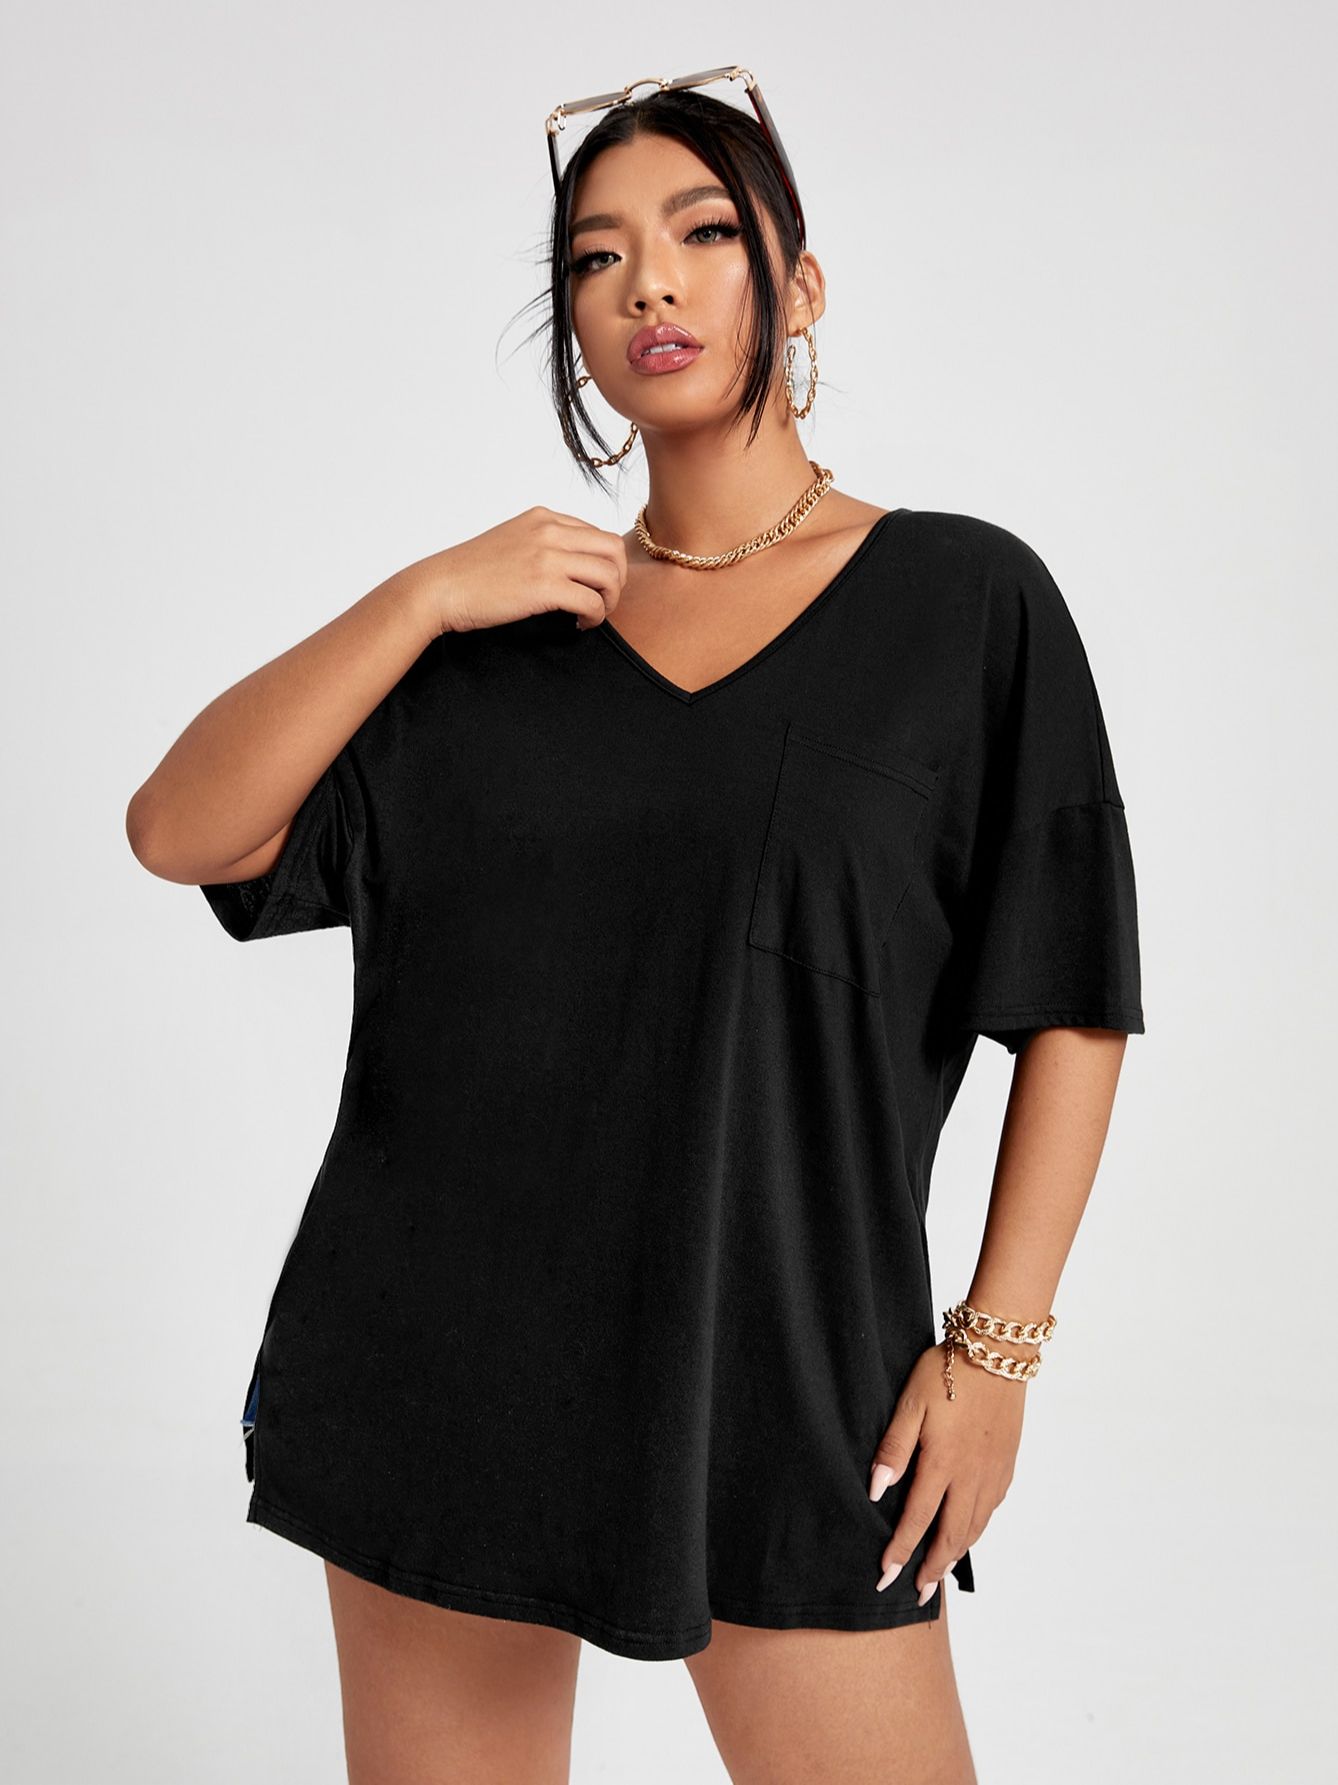 Camiseta de talla grande 4XL para mujer, blusa informal de media manga con cuello de pico, color negro, Tops sólidos elegantes para mujer 2022